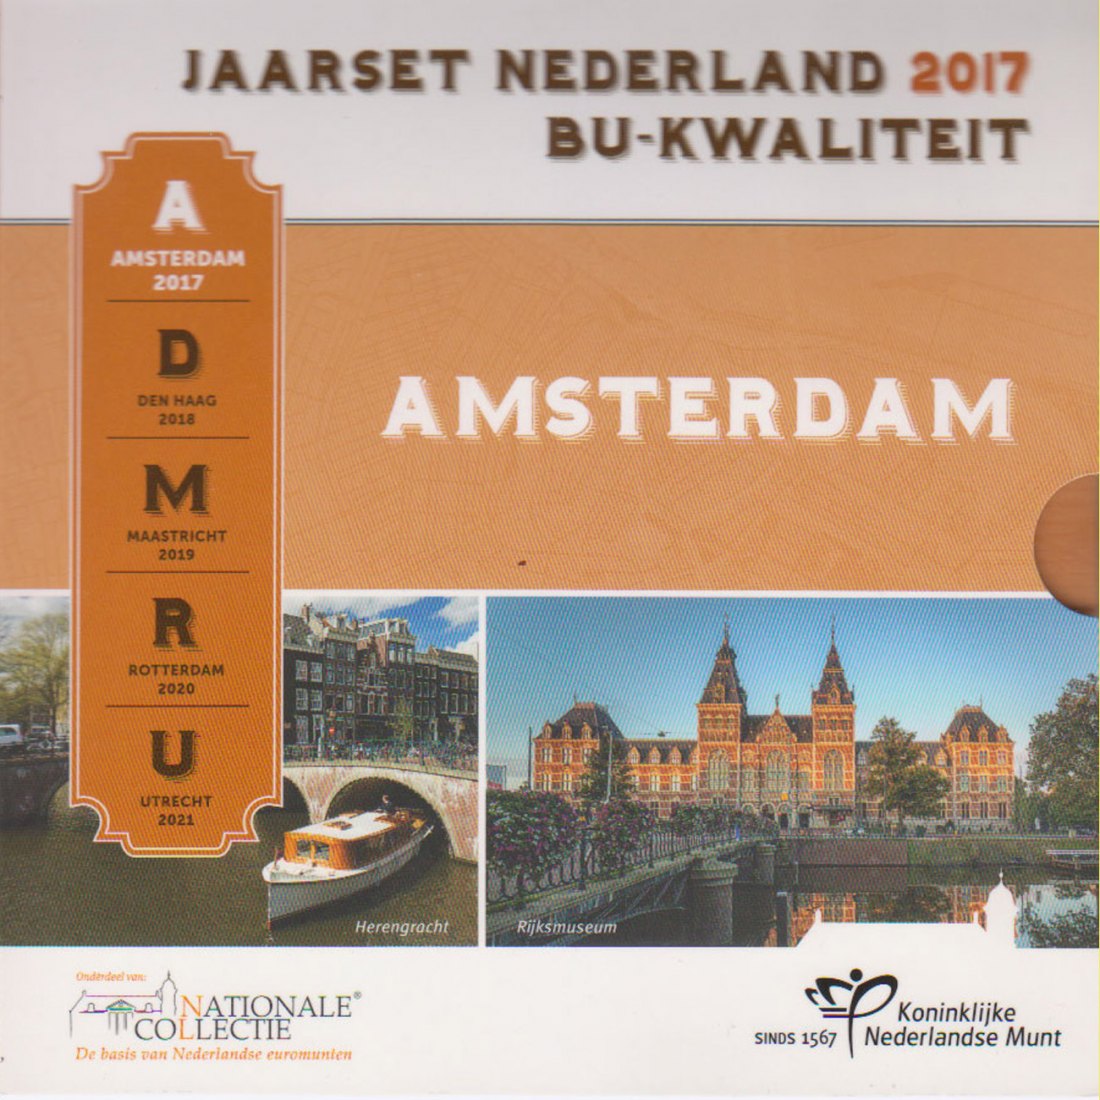  Offiz. Euro-KMS Niederlande *Städte in den Niederlanden - Amsterdam* 2017 nur 15.000St!   